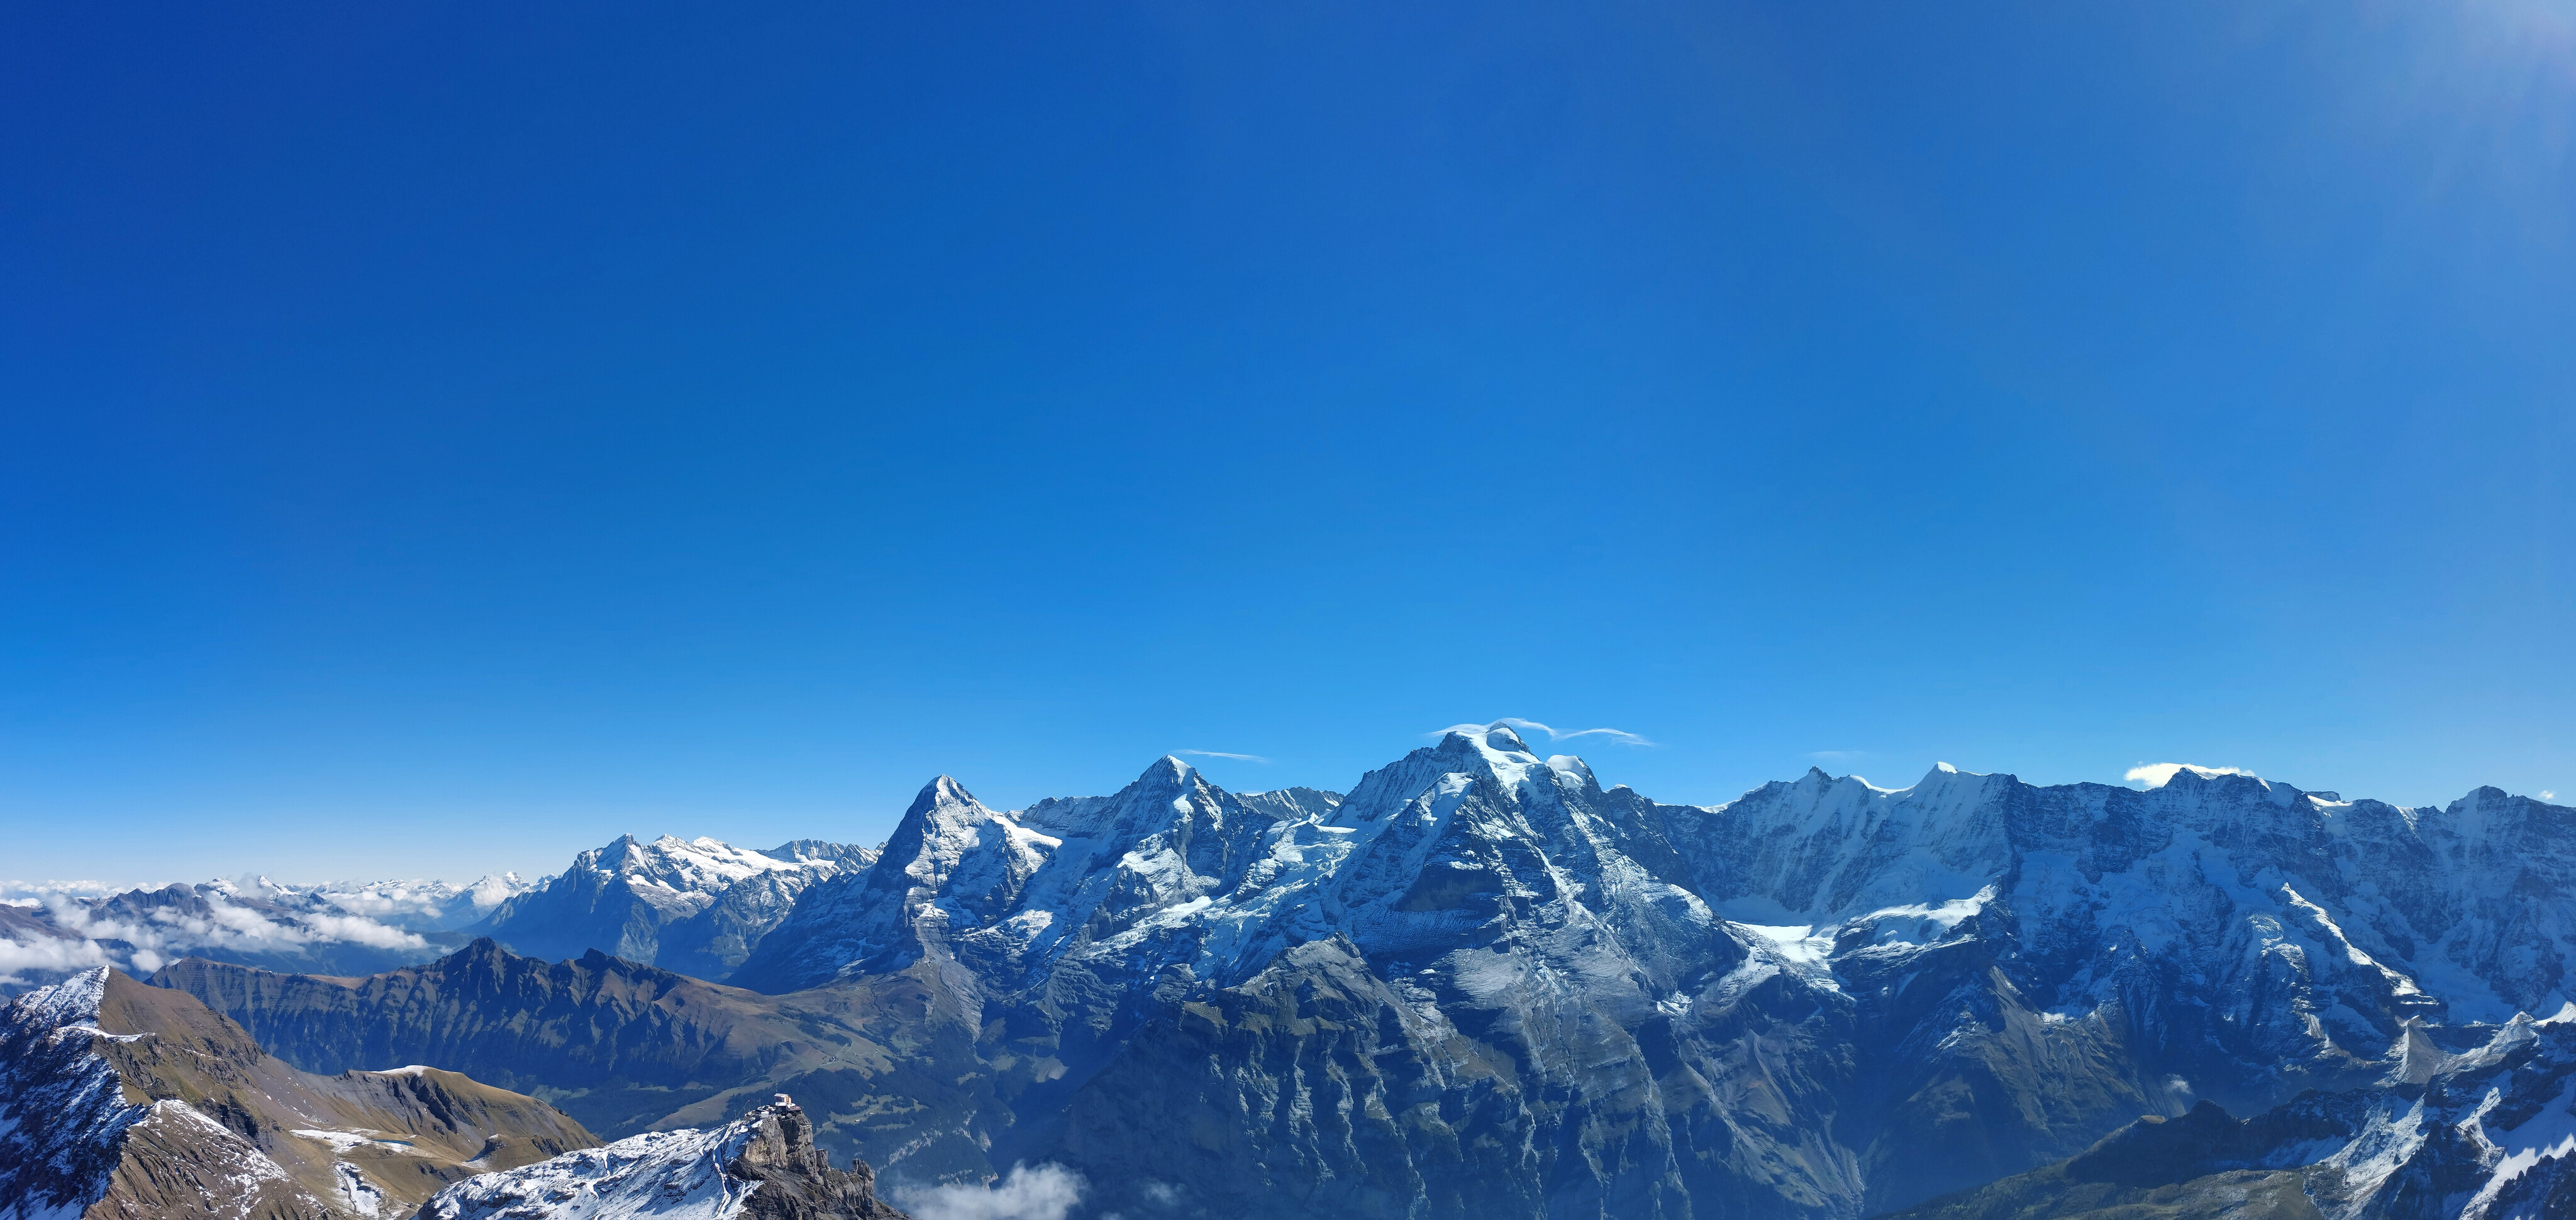 Jungfrau, Mönch, Eiger